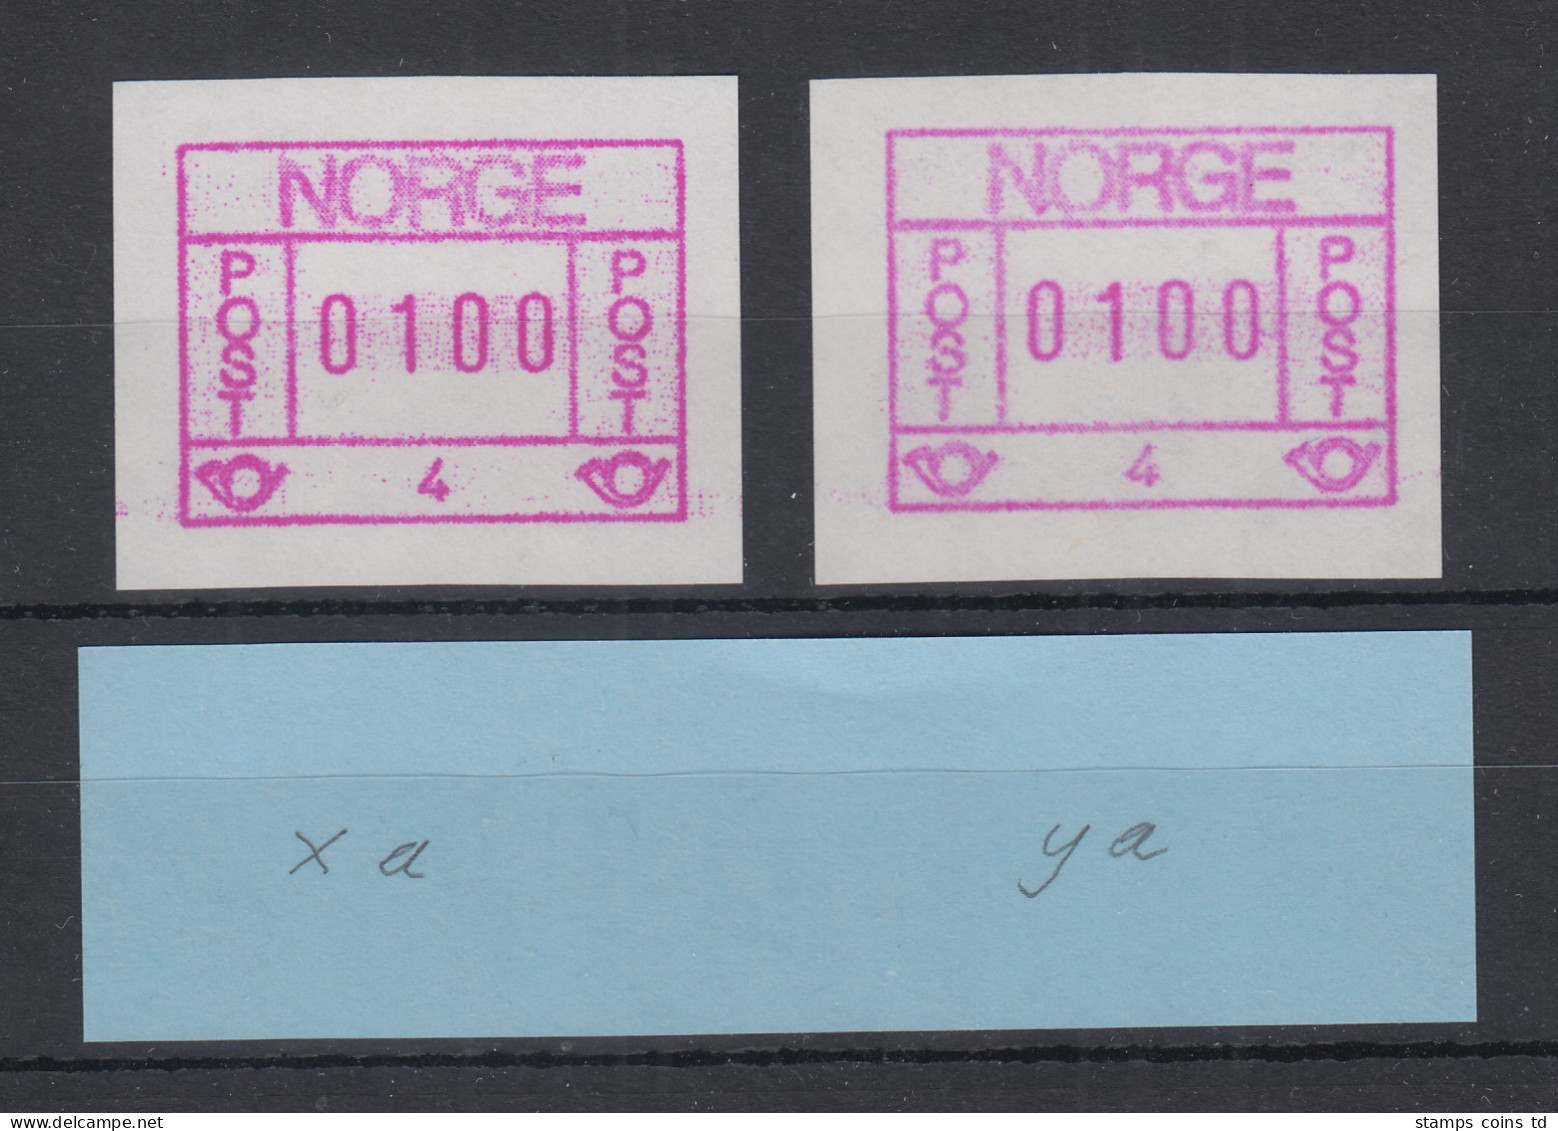 Norwegen / Norge Frama-ATM 1978 Aut.-Nr. 4 Dunkles / Helles Papier ** - Vignette [ATM]